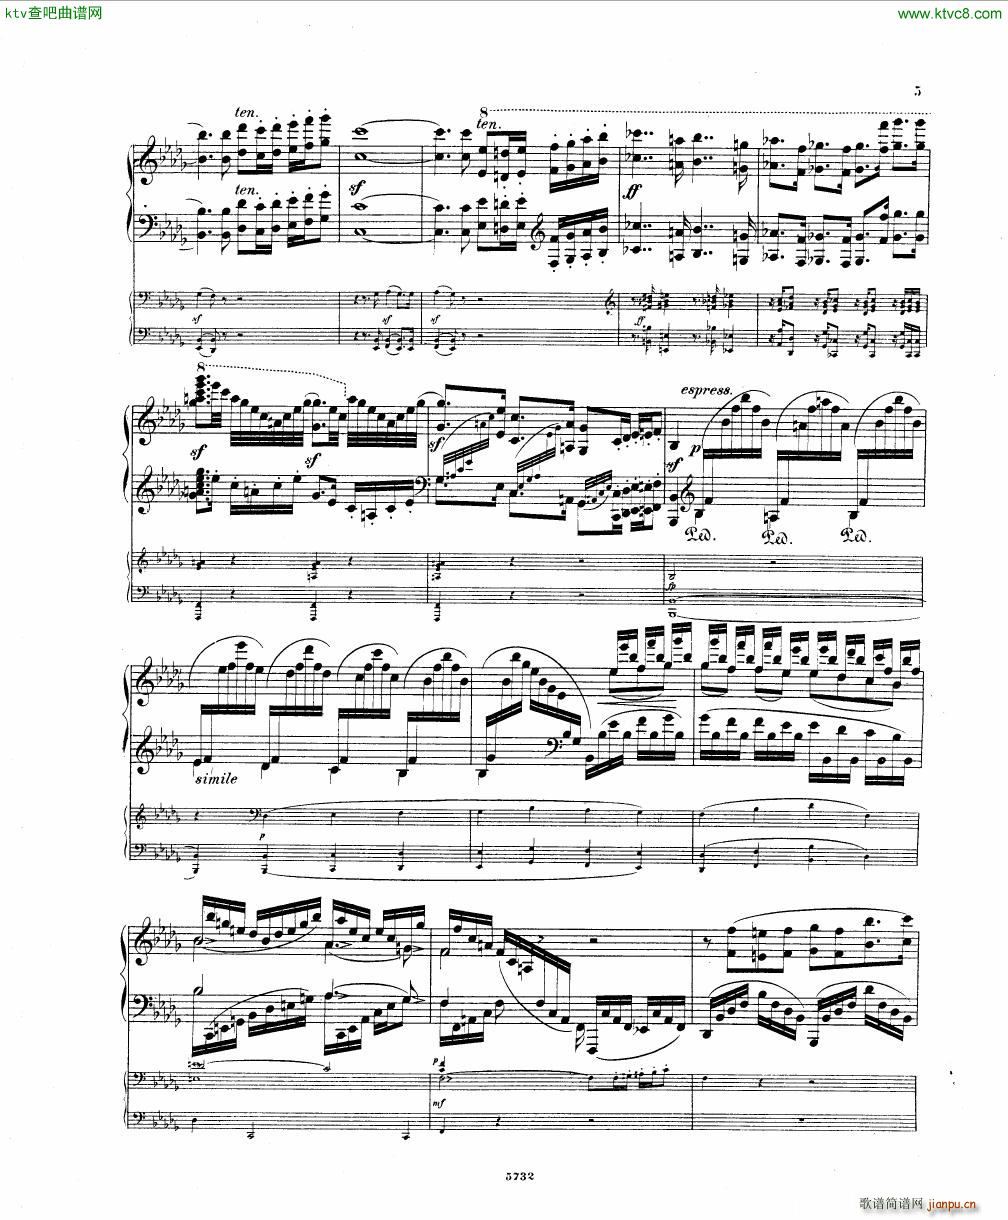 Fuchs Piano concerto Op 27 I()3